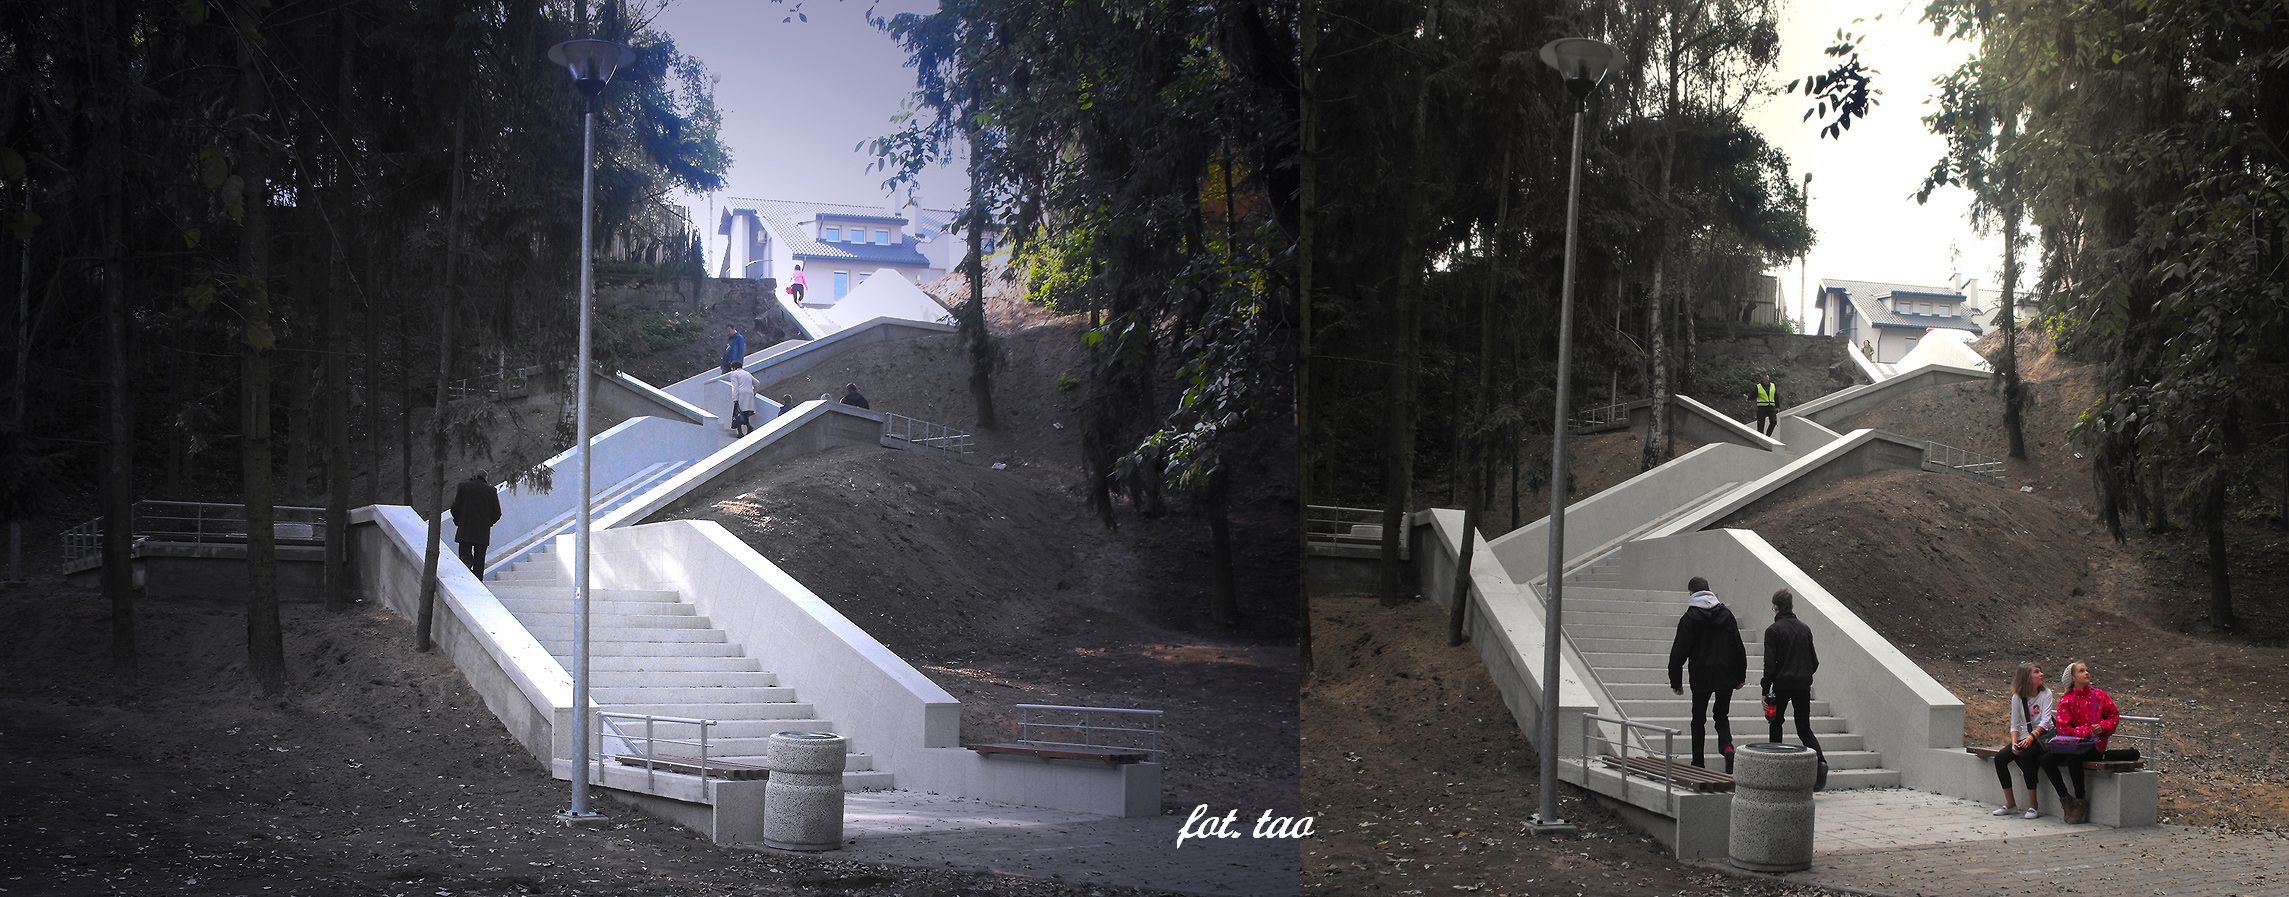 Odnowione schody z rynku do ul. Narutowicza, padziernik 2013 r.